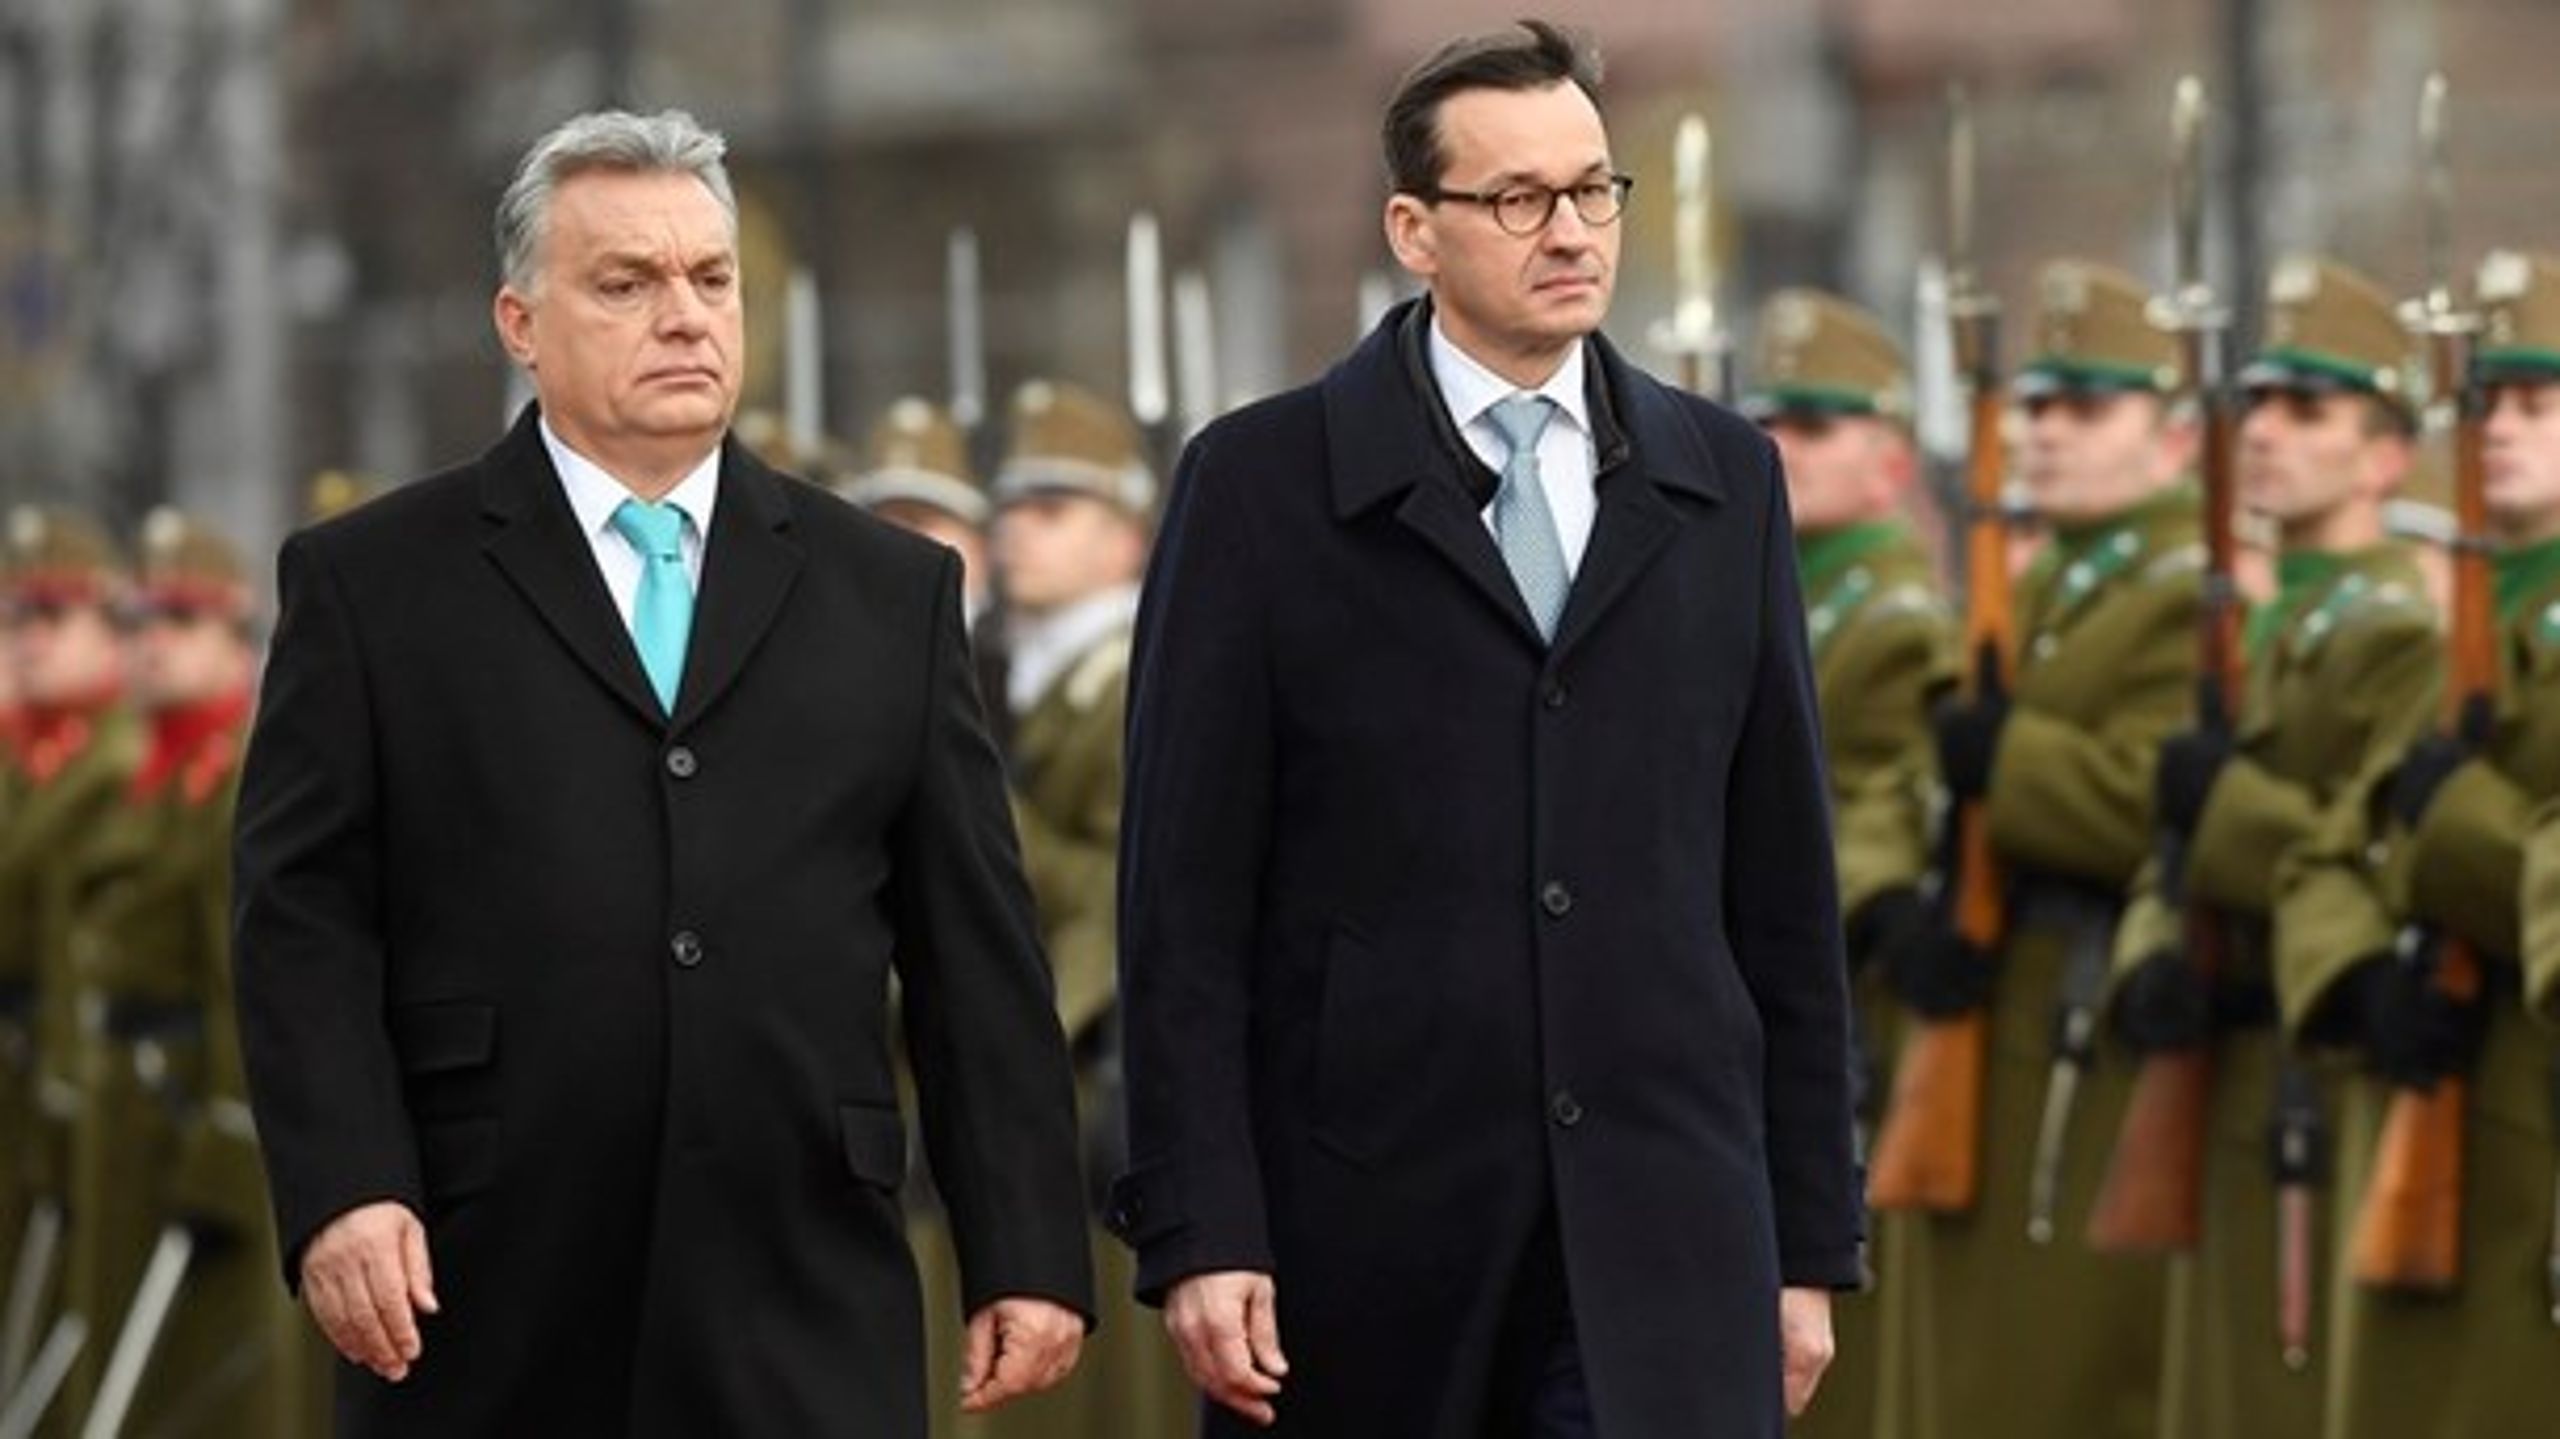 Ungarns premierminister Viktor Orbán&nbsp;og&nbsp; Mateusz Morawiecki, som er premierminister i Polen, er ifølge Yascha Mounk begge del af en illiberal strømning inden for europæisk politik.&nbsp;